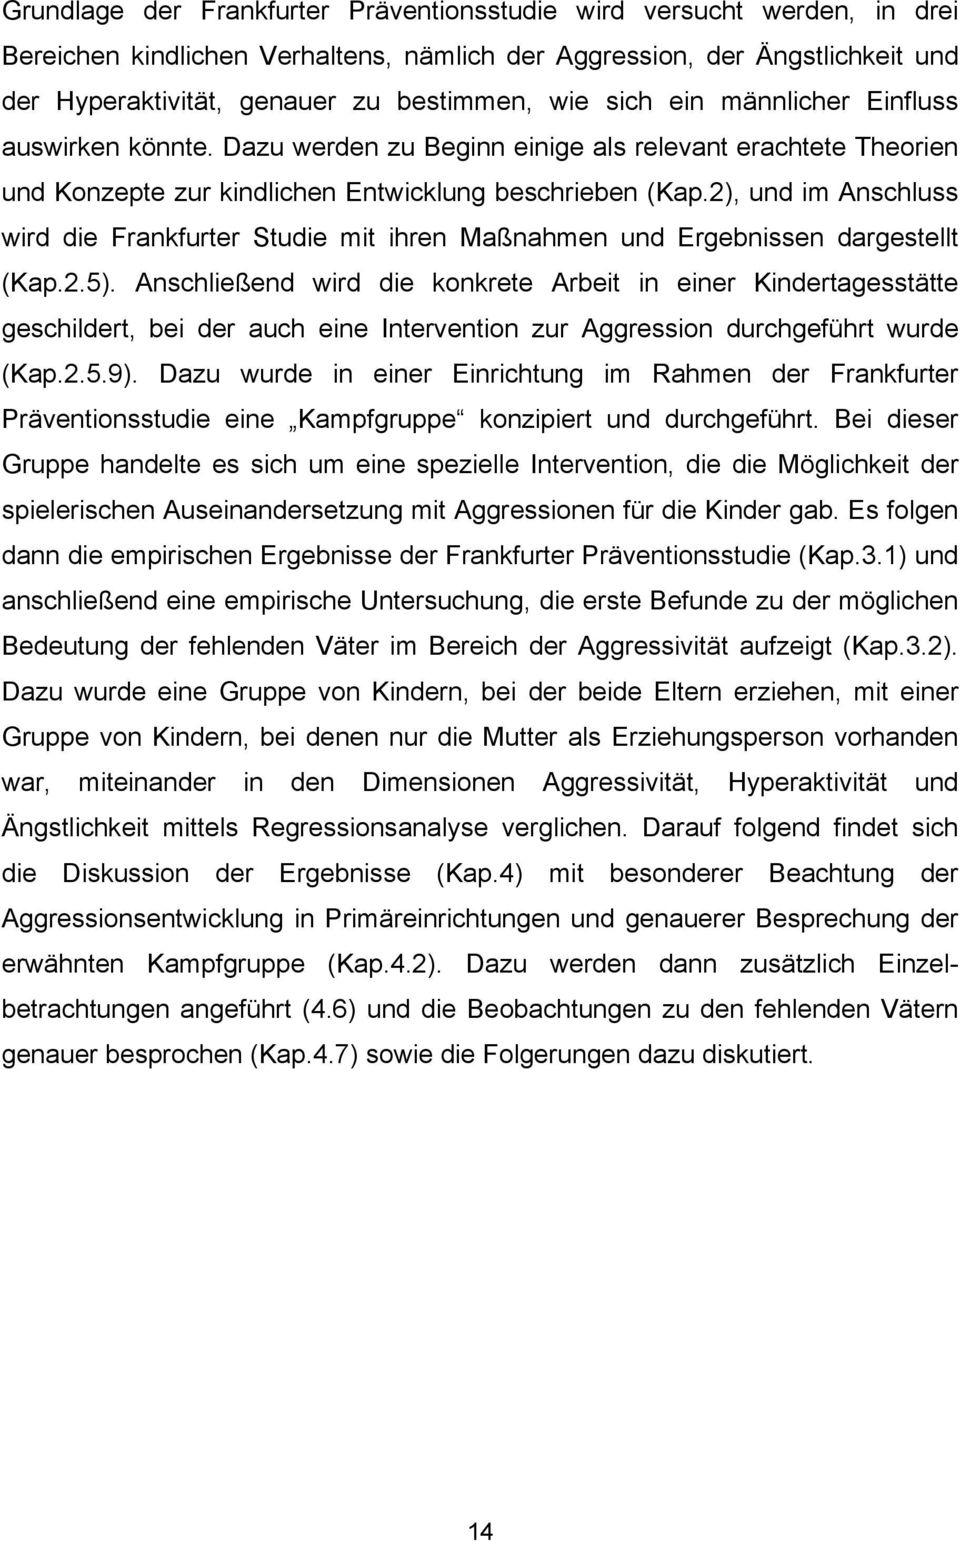 2), und im Anschluss wird die Frankfurter Studie mit ihren Maßnahmen und Ergebnissen dargestellt (Kap.2.5).